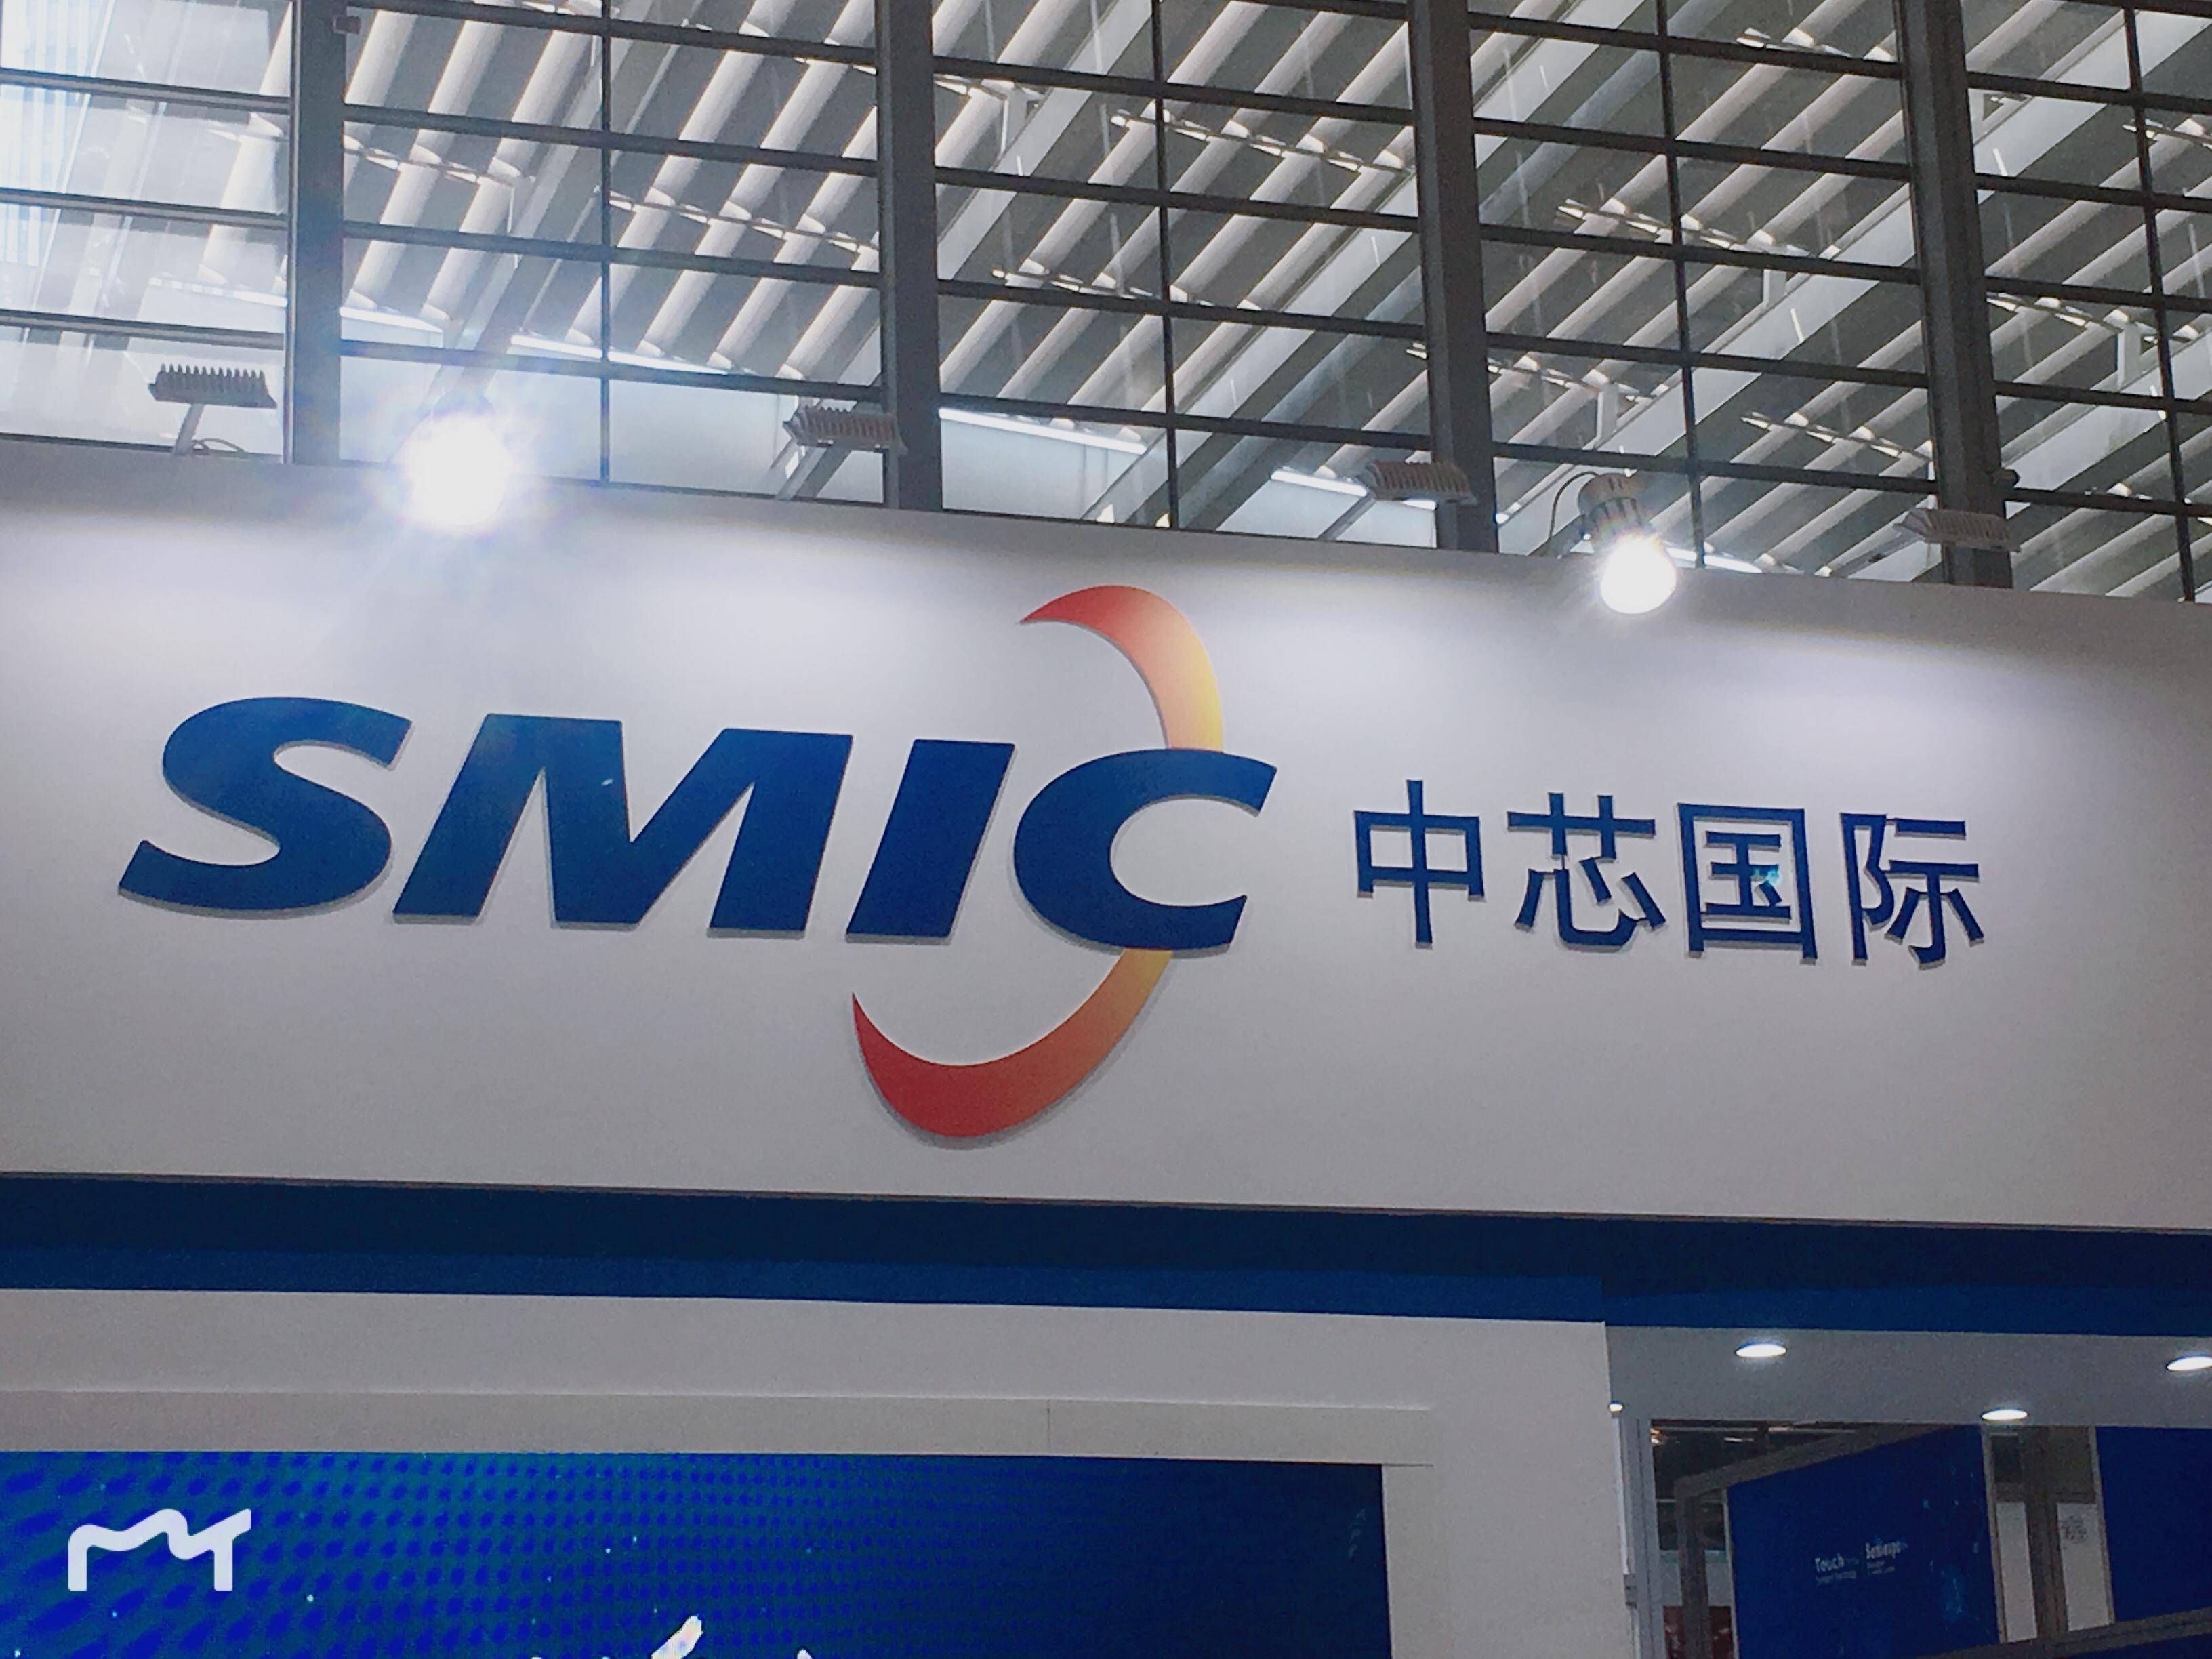 中芯国际披露,公司于2月1日与阿斯麦(asml)上海签订了经修订和重述的